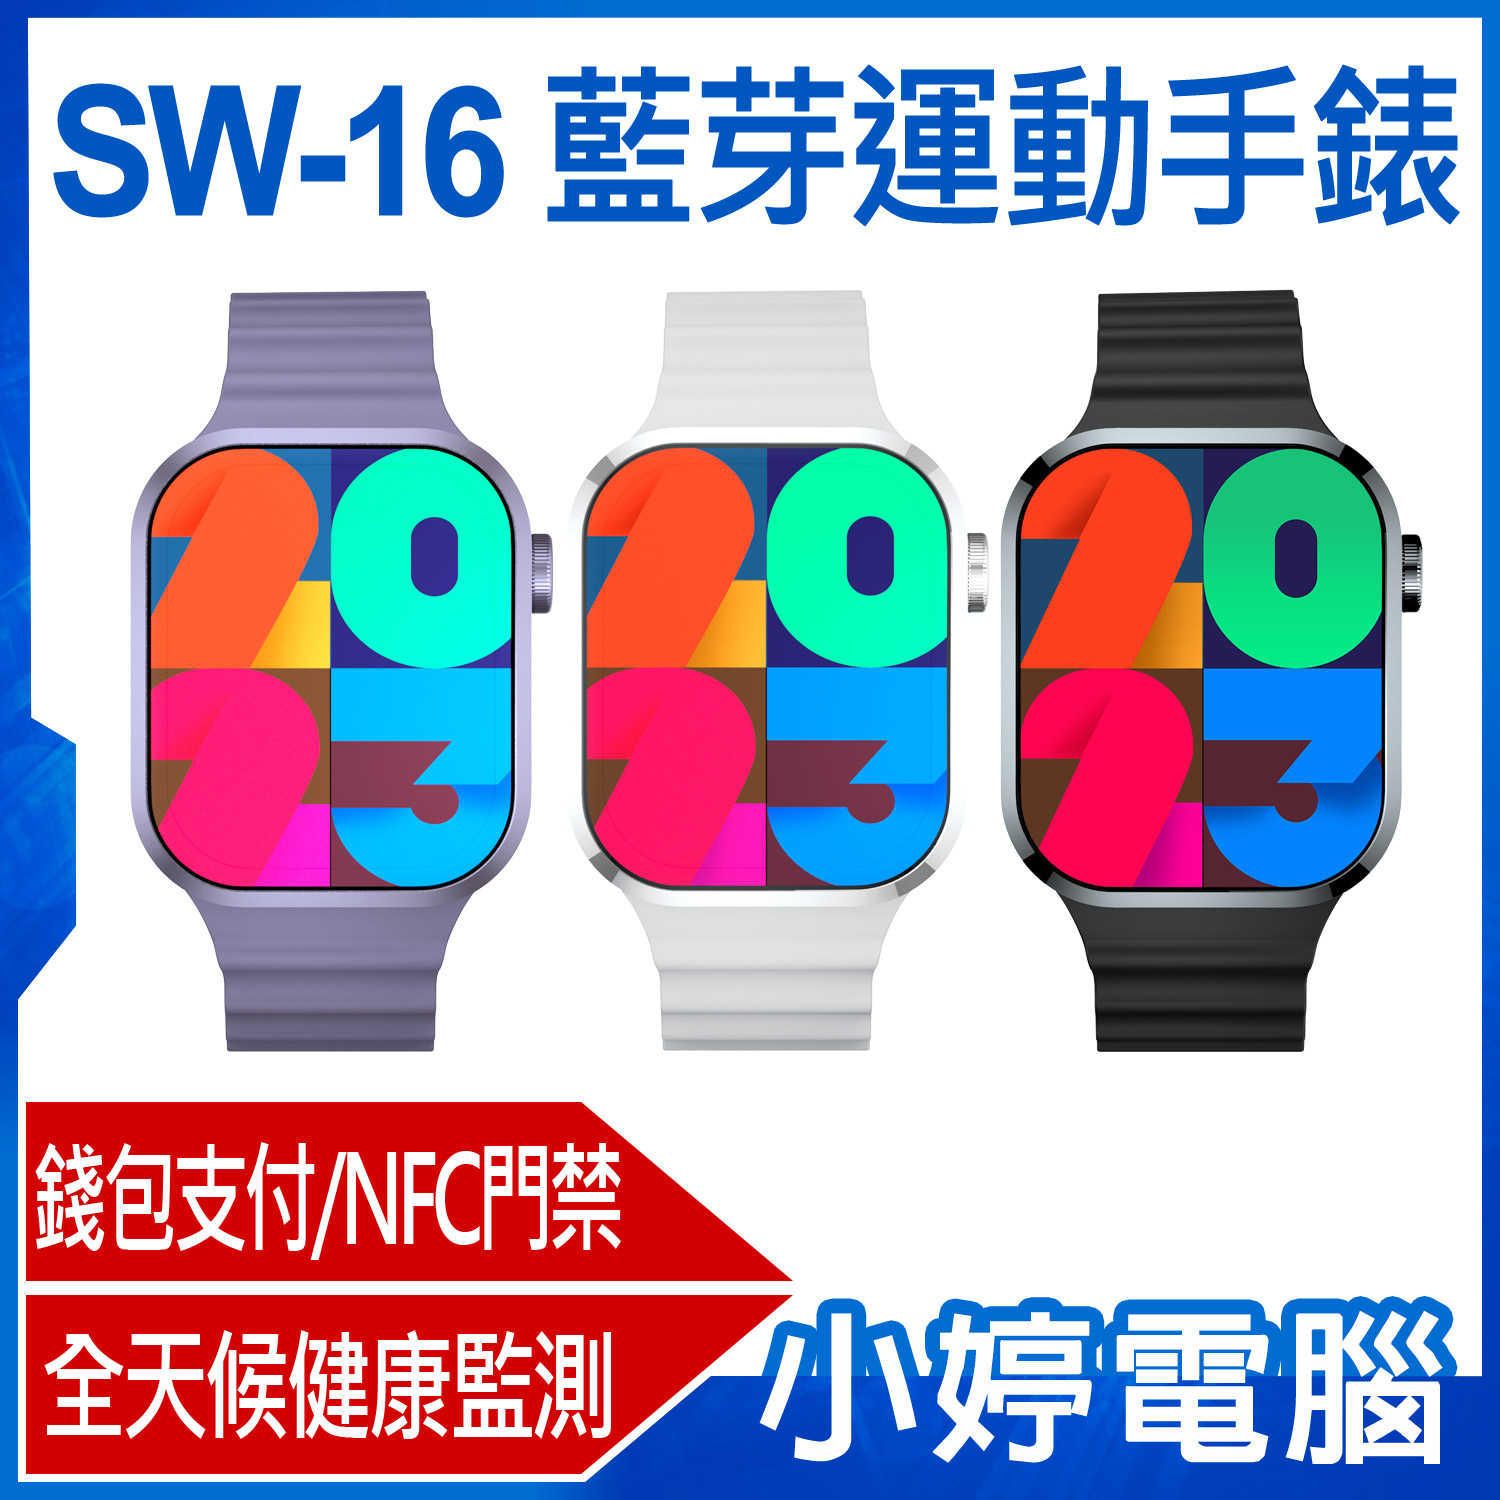 【小婷電腦】SW-16 藍芽運動手錶 2.1吋大螢幕 藍芽通話 健康監測 NFC門禁 錢包支付 IP68